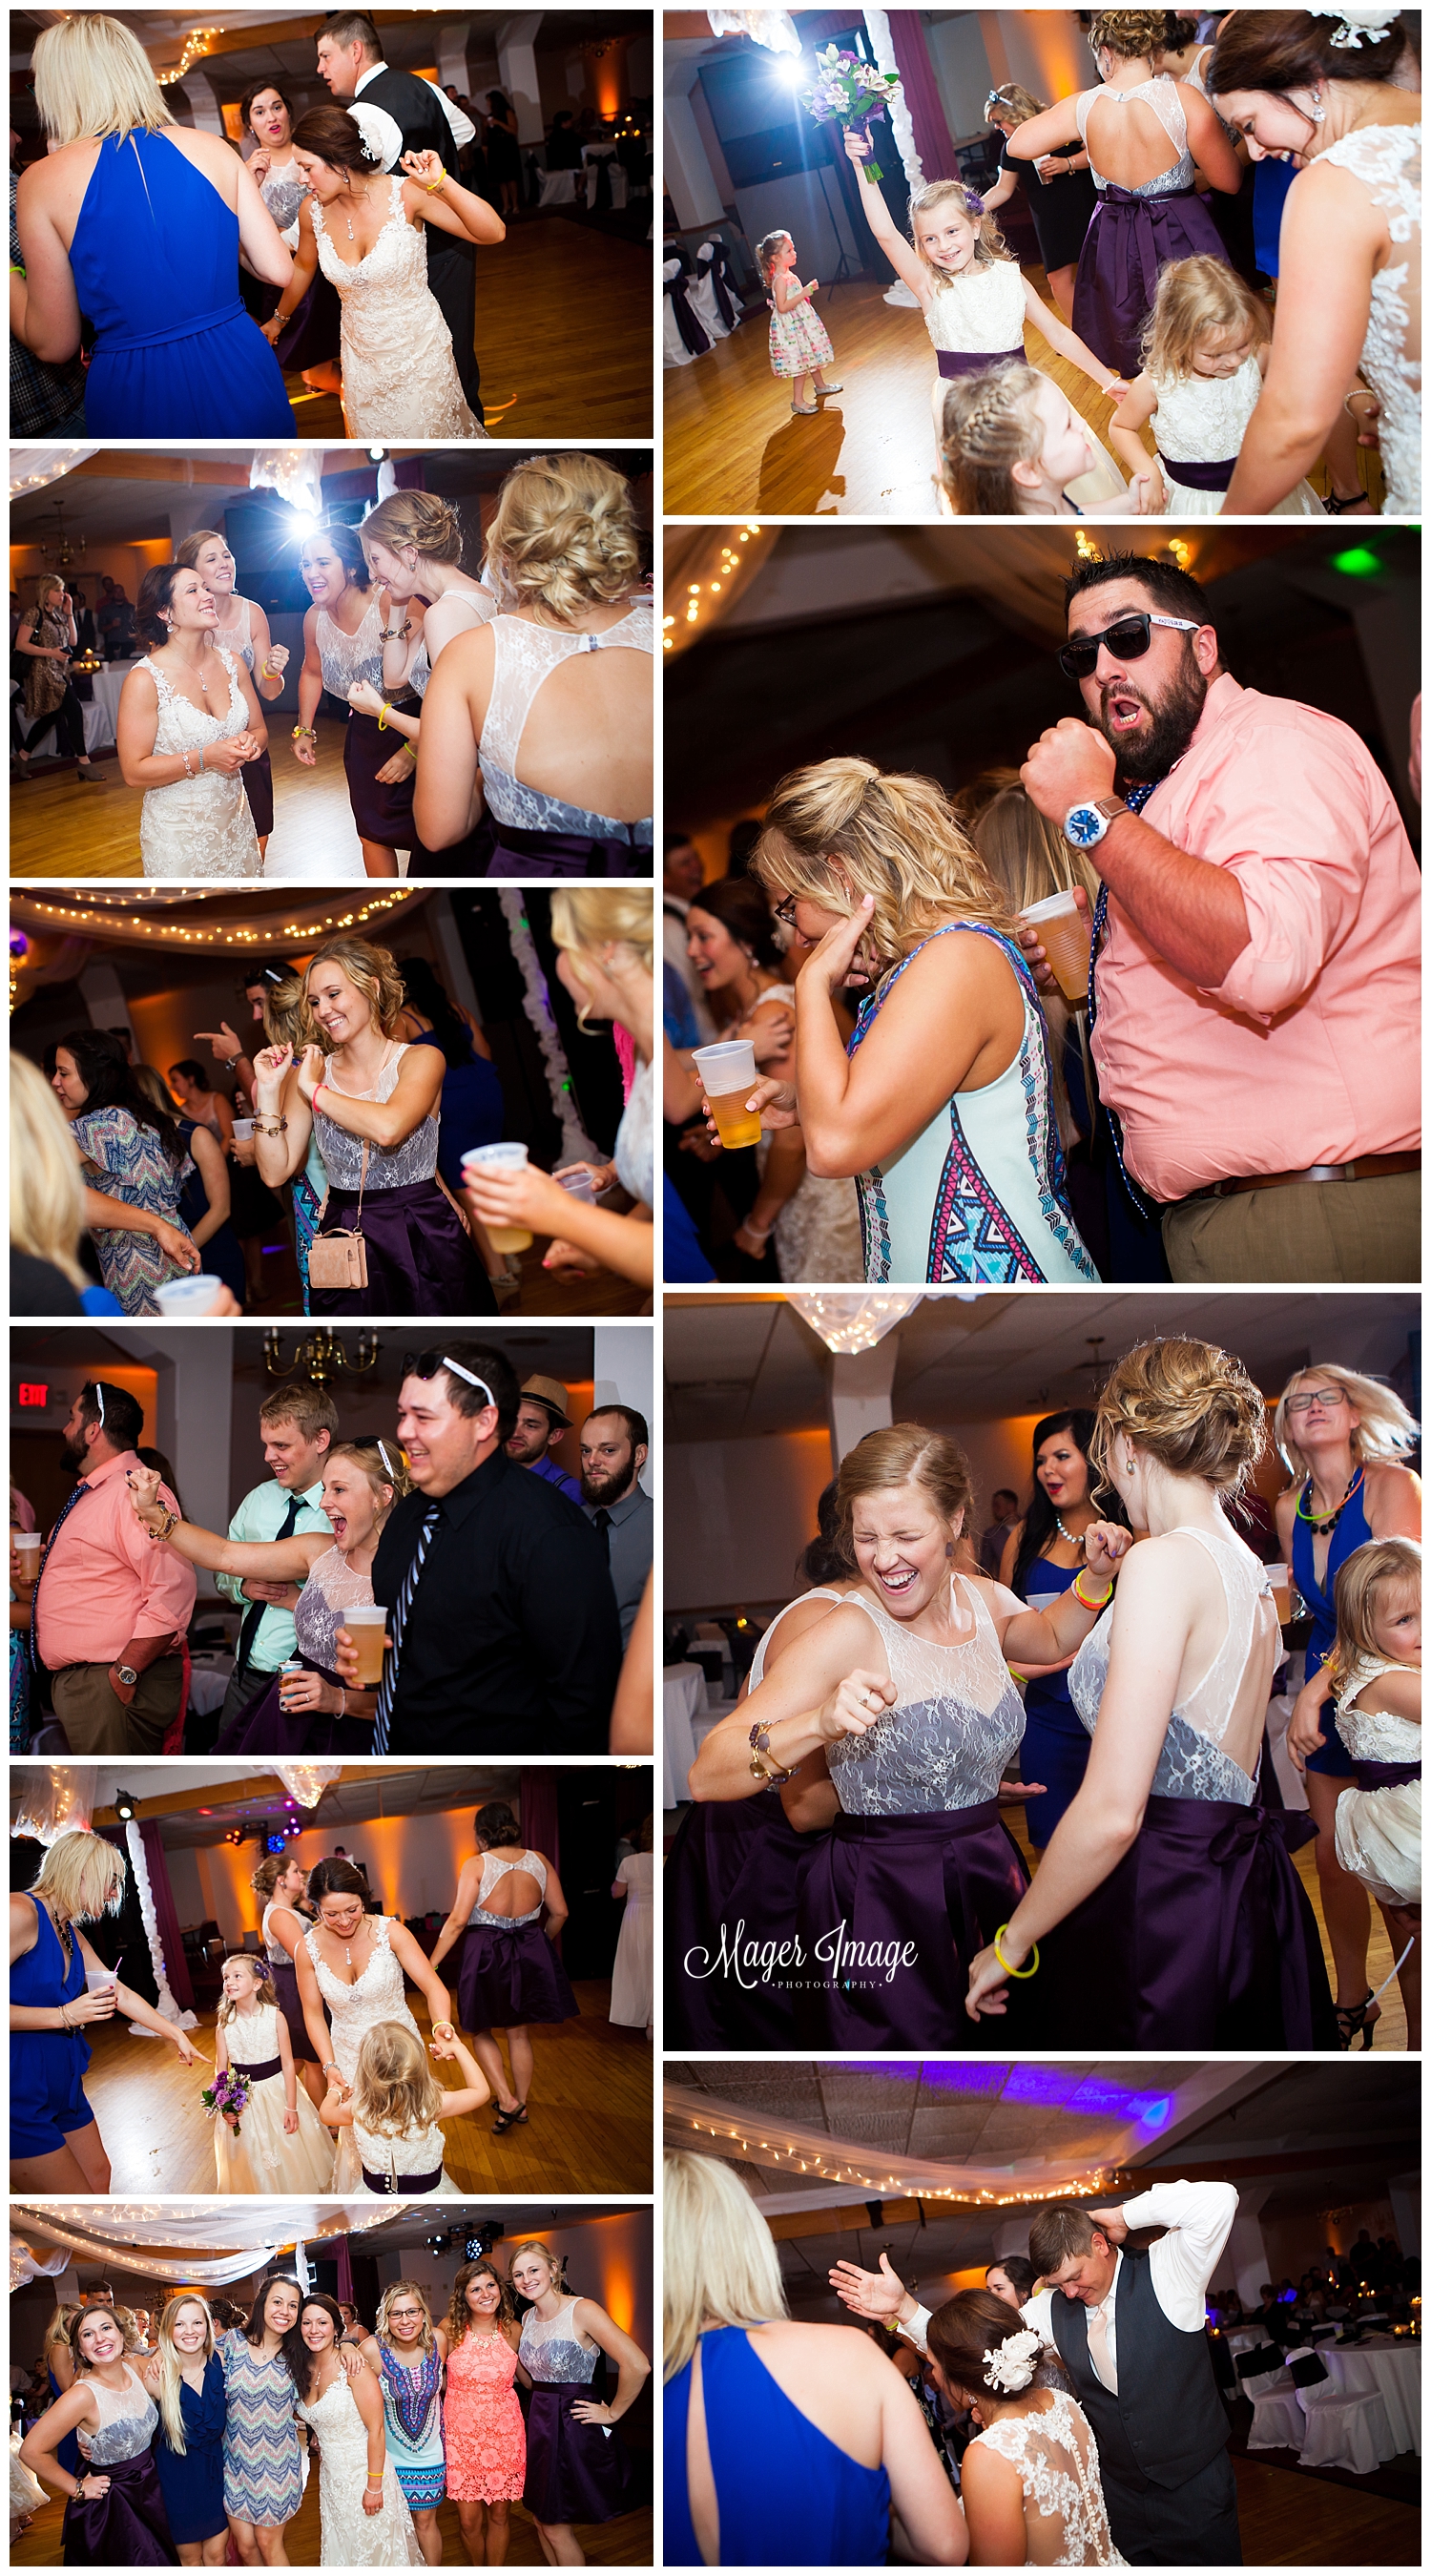 party photos dancing fun wedding reception